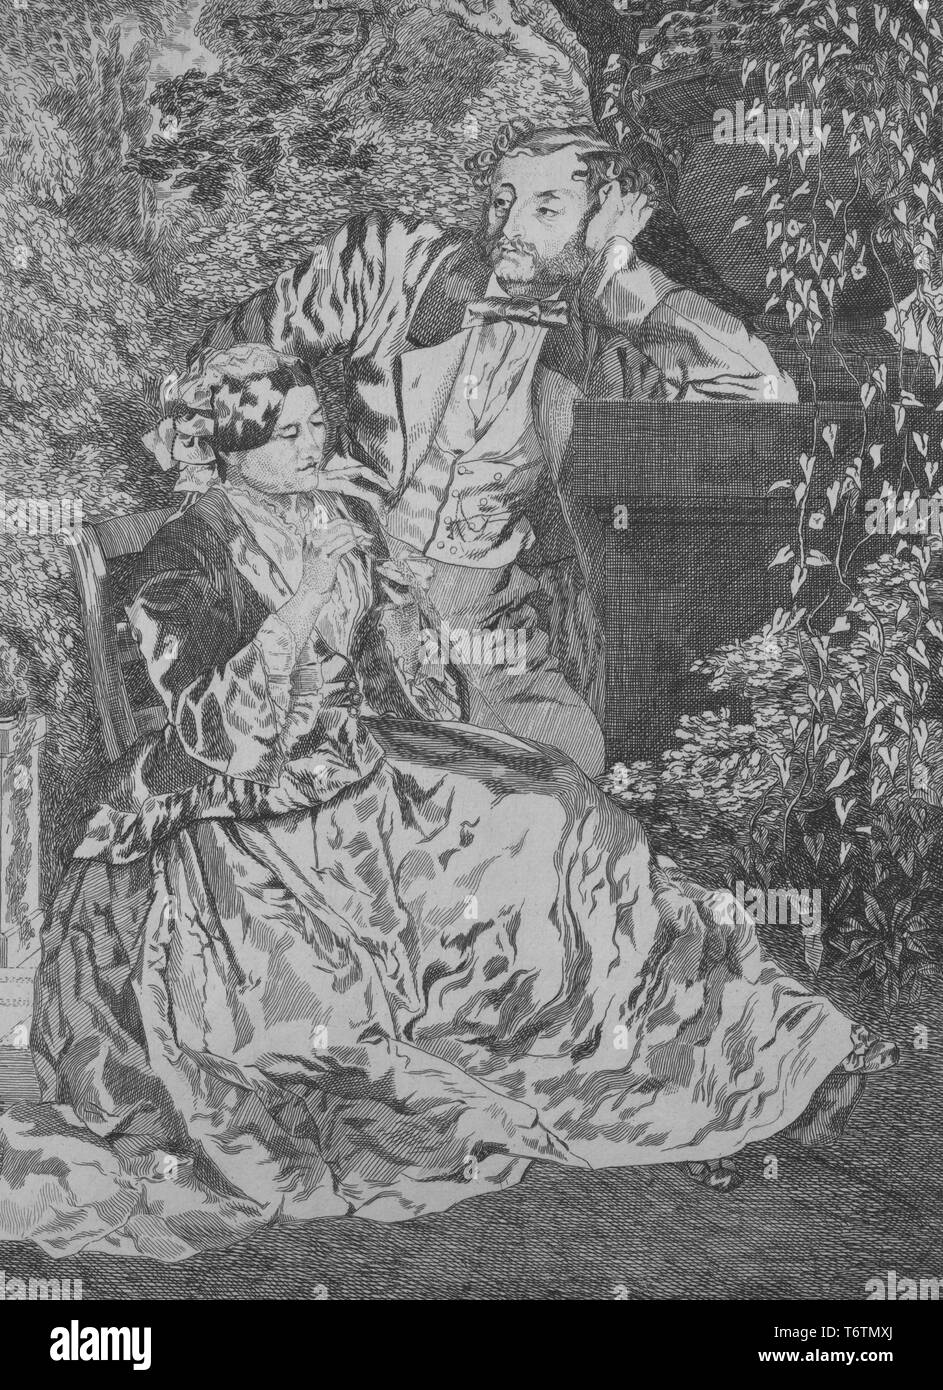 Bianco e nero incisione raffigurante una coppia vittoriano in un ambiente all'aperto, la donna seduta si concentra sul suo ricamo mentre l'uomo si erge dietro di lei, languidly pendente su un breve, urn-sormontato pilastro, con vigneti, alberi e altre Fogliame visibile in background; intitolato 'La Broderie l'Aiguille' (il ricamo ad ago); numerate, con l'illustratore Felix Bracquemond, 1867. Dalla Biblioteca Pubblica di New York. () Foto Stock